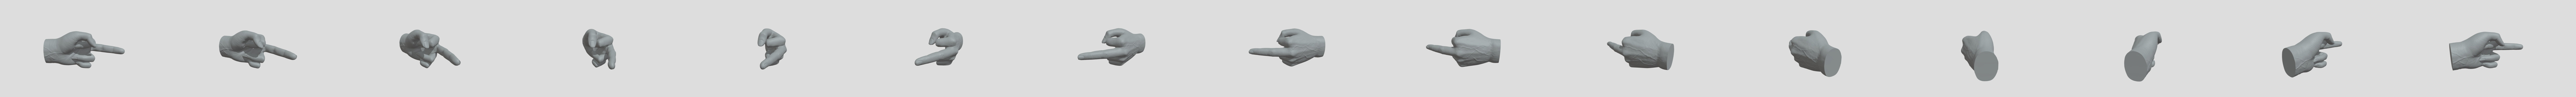 Middle Finger snap on Stinkefinger 3D model 3D printable